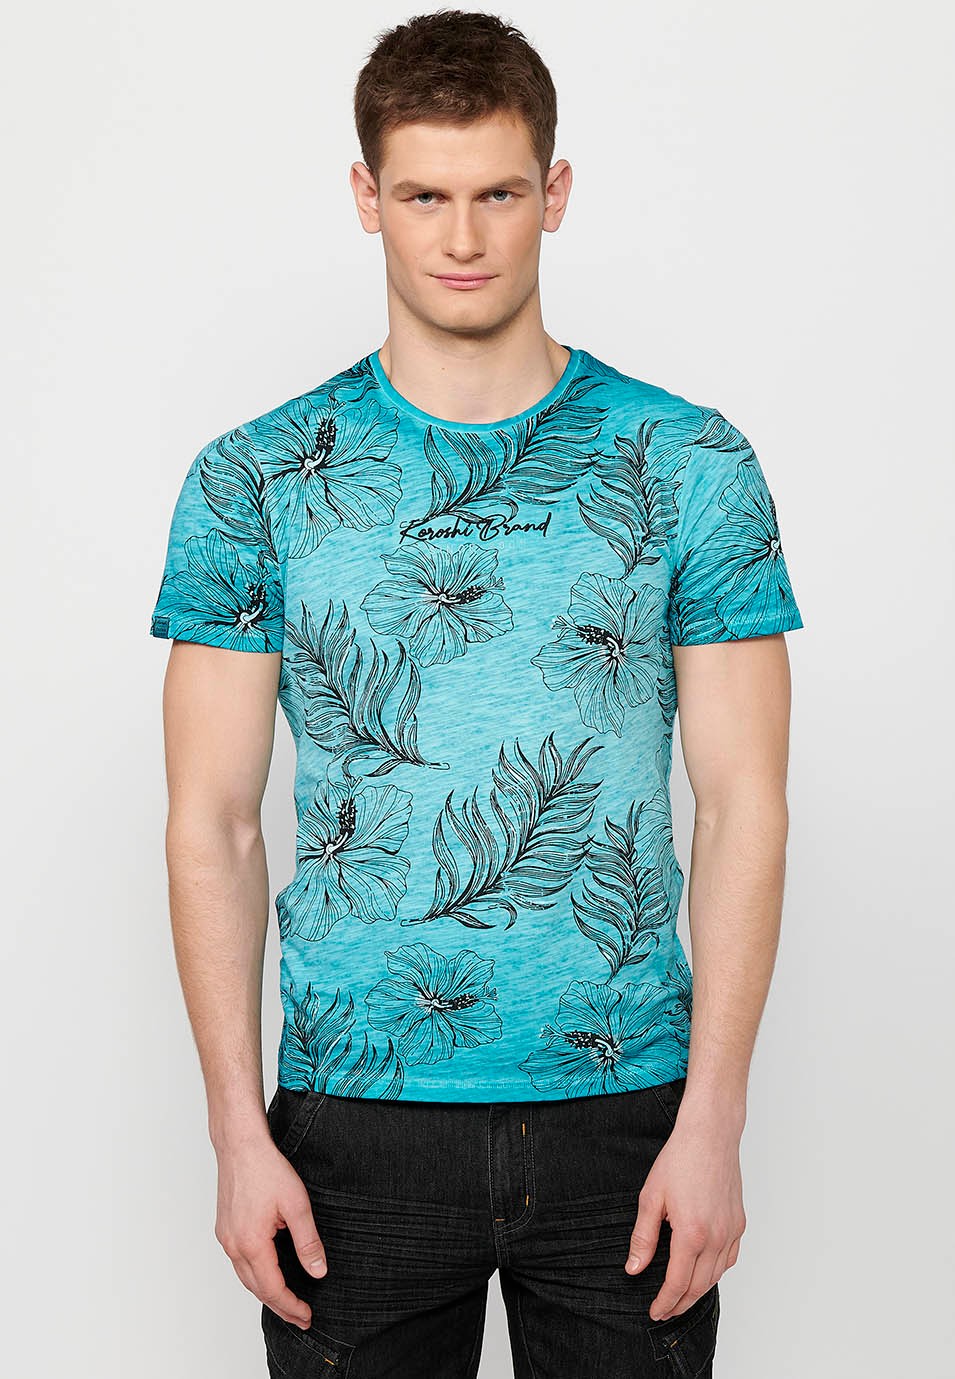 T-shirt manches courtes en coton, imprimé floral menthe pour homme